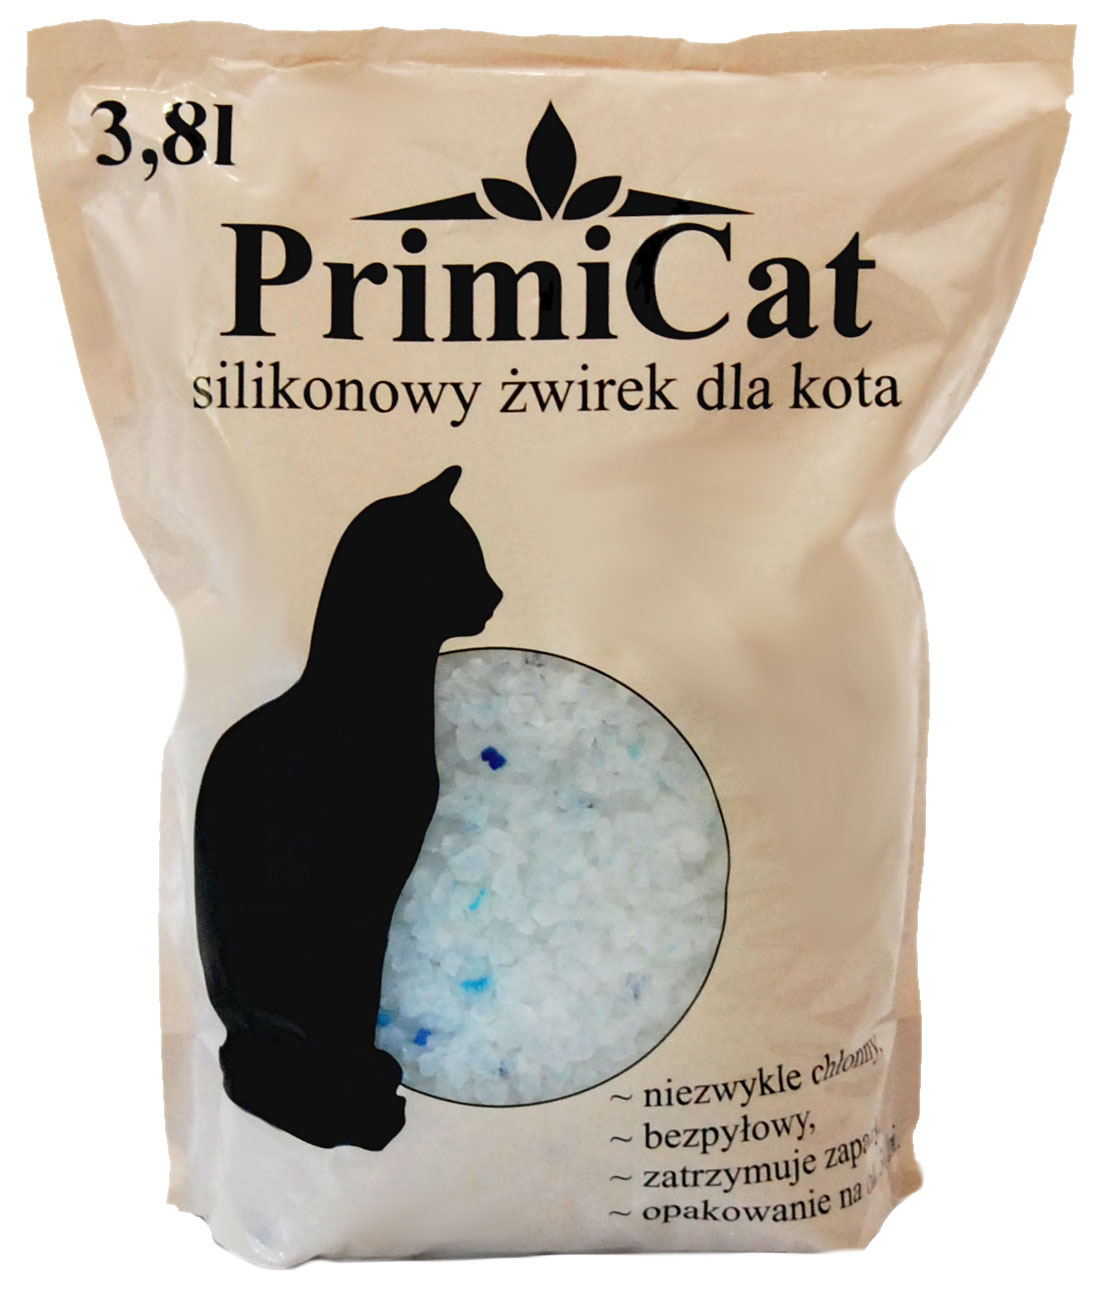 Silikonowy żwirek dla kota PrimiCat 5 x 3.8L = 19 litrów